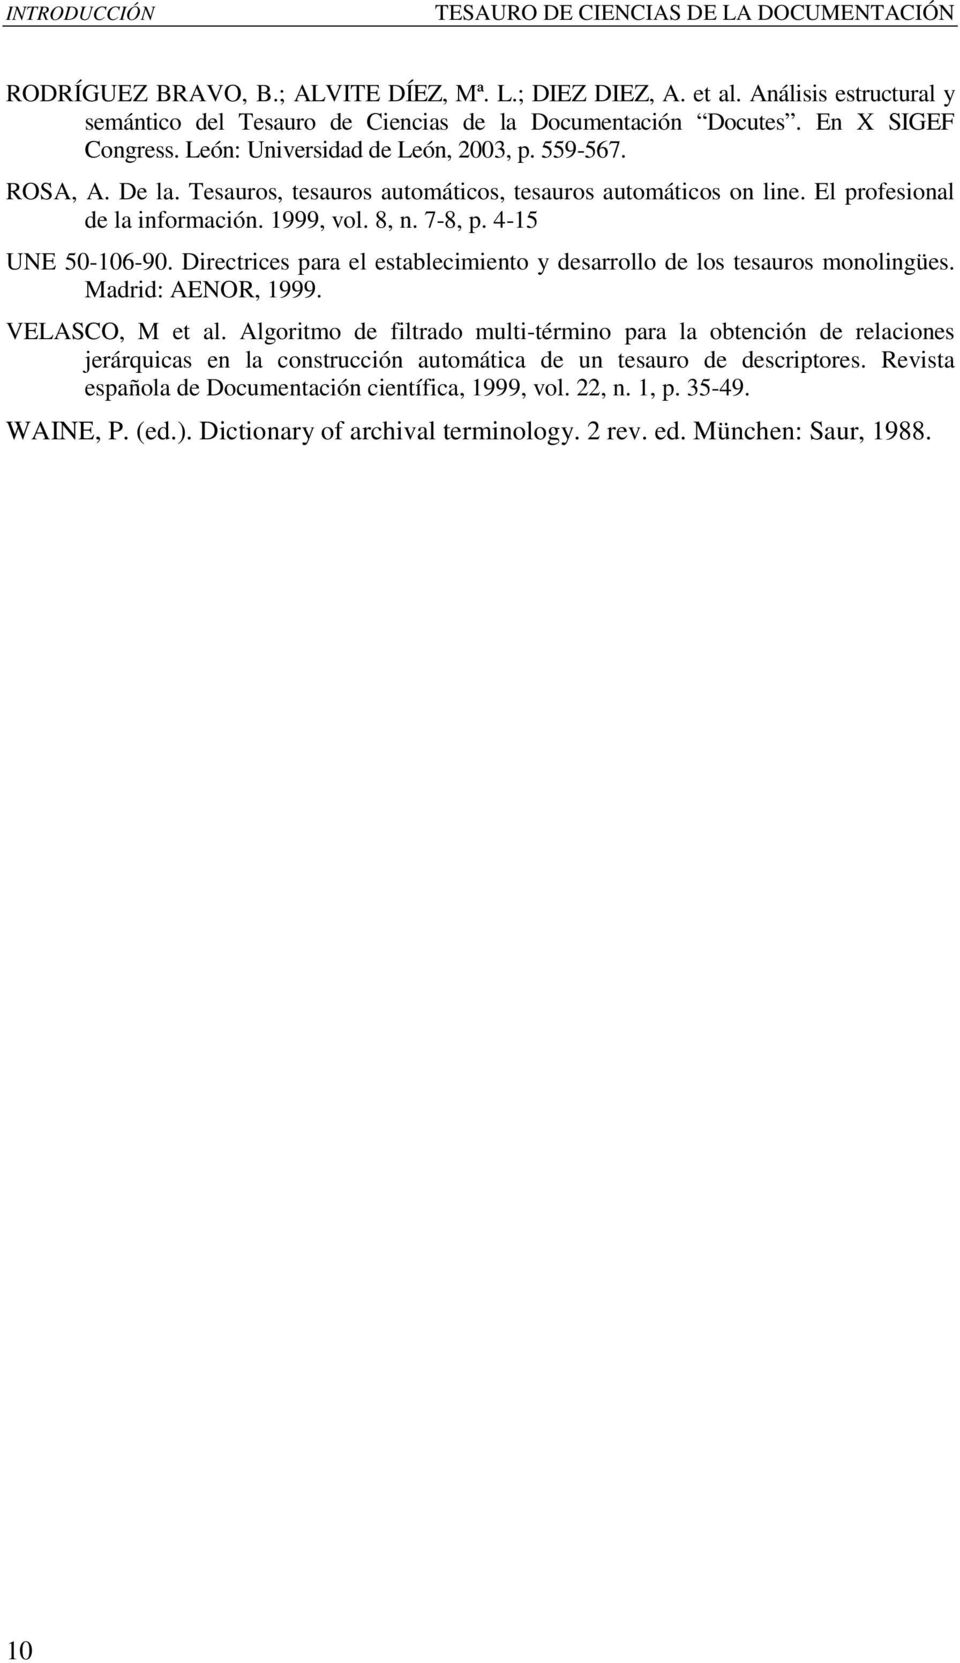 Tesauros, tesauros automáticos, tesauros automáticos on line. El profesional de la información. 1999, vol. 8, n. 7-8, p. 4-15 UNE 50-106-90.